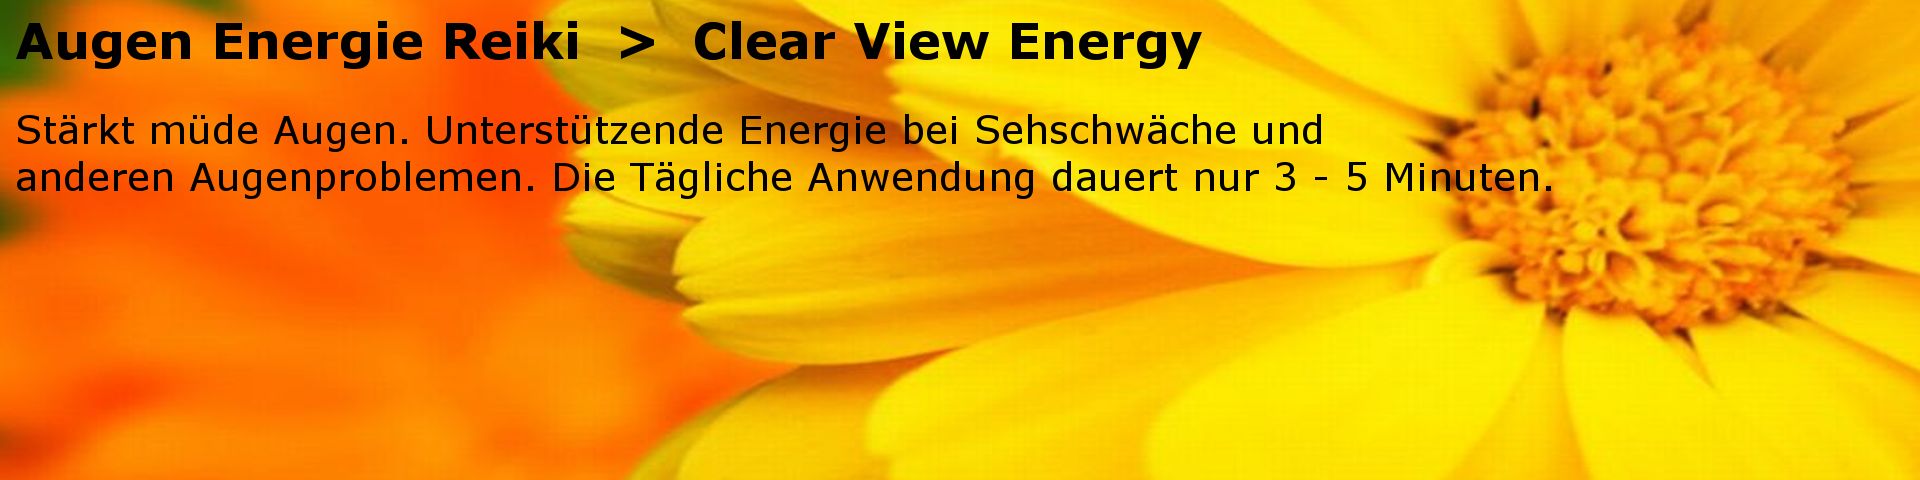 Augen Energie Reiki Einweihung. Die "Clear View Energy" stärkt müde Augen.